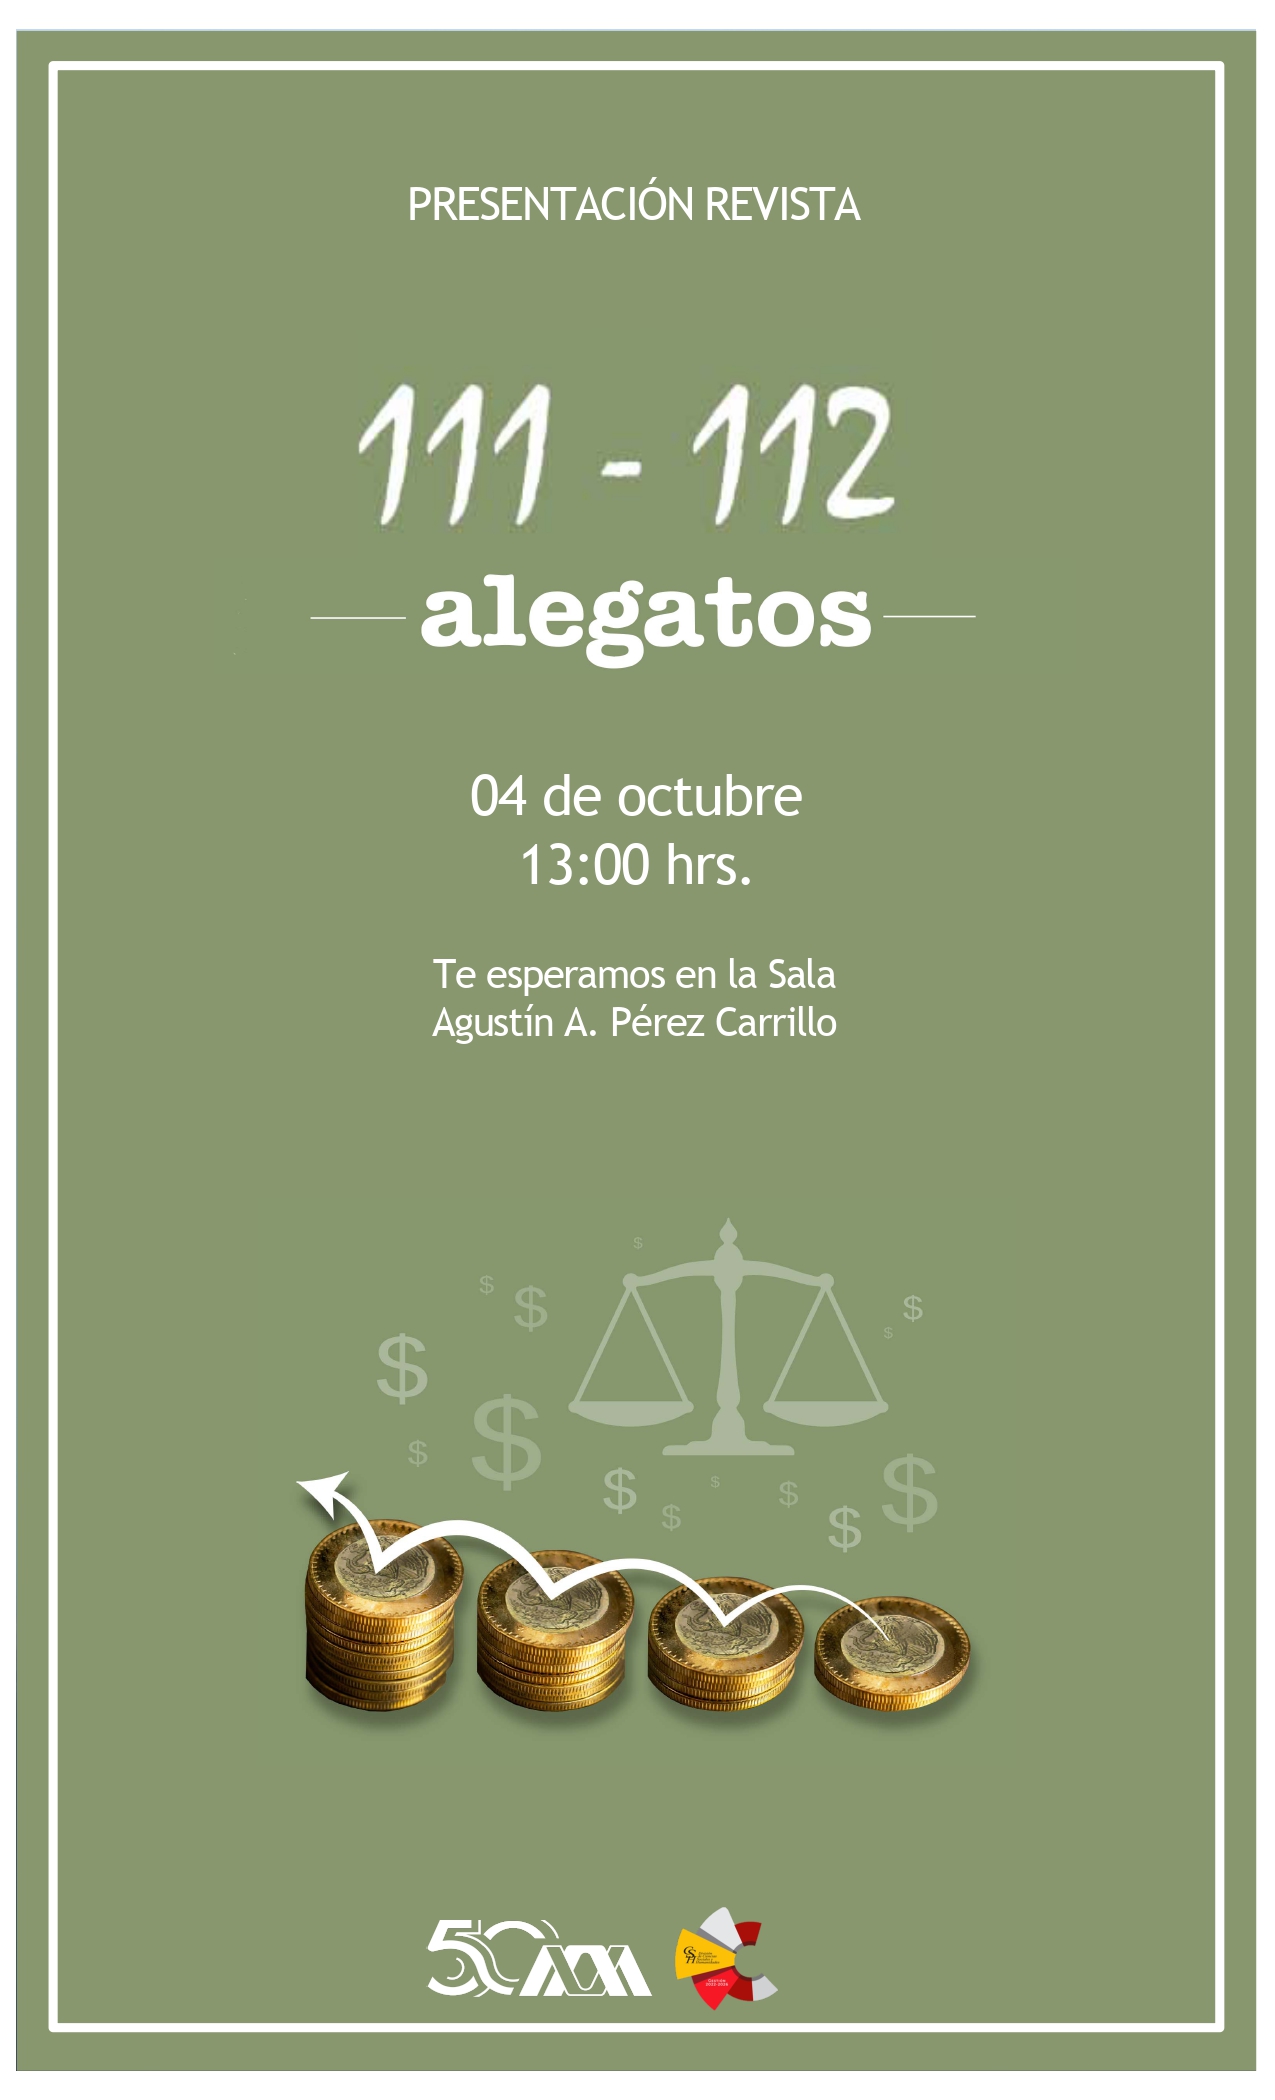 Copia de cartelAlegatos111-112 y 113 page-0001